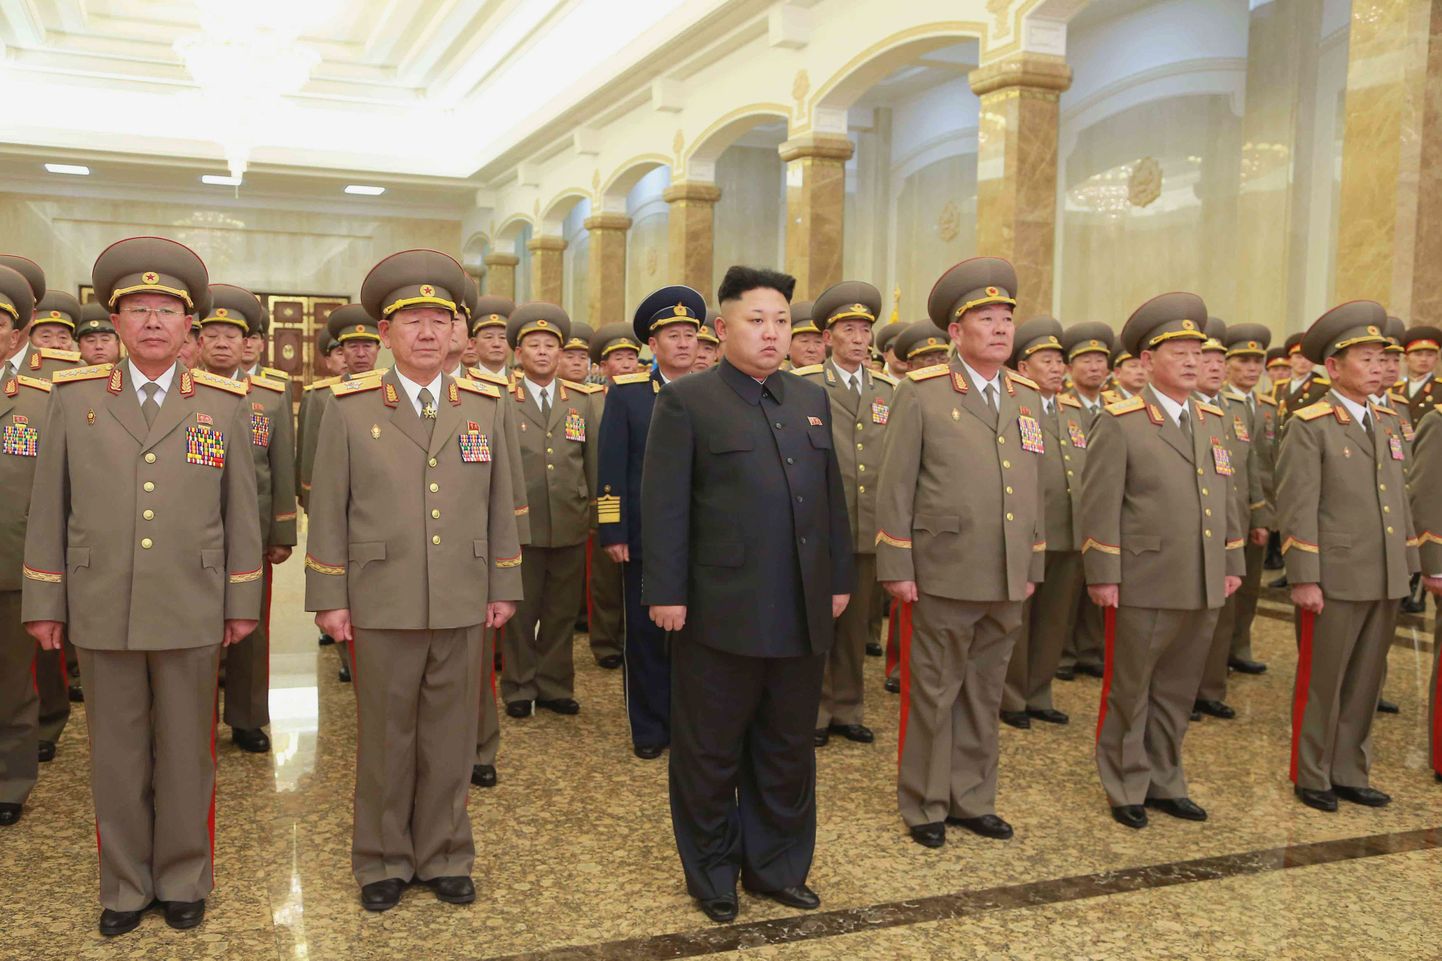 Põhja-Korea diktaator Kim Jong-un (ees keskel) avaldab austust oma vanaisale Kim Il-sungile ja isale Kim Jong-ilile Kumsusani Päikesepalees.